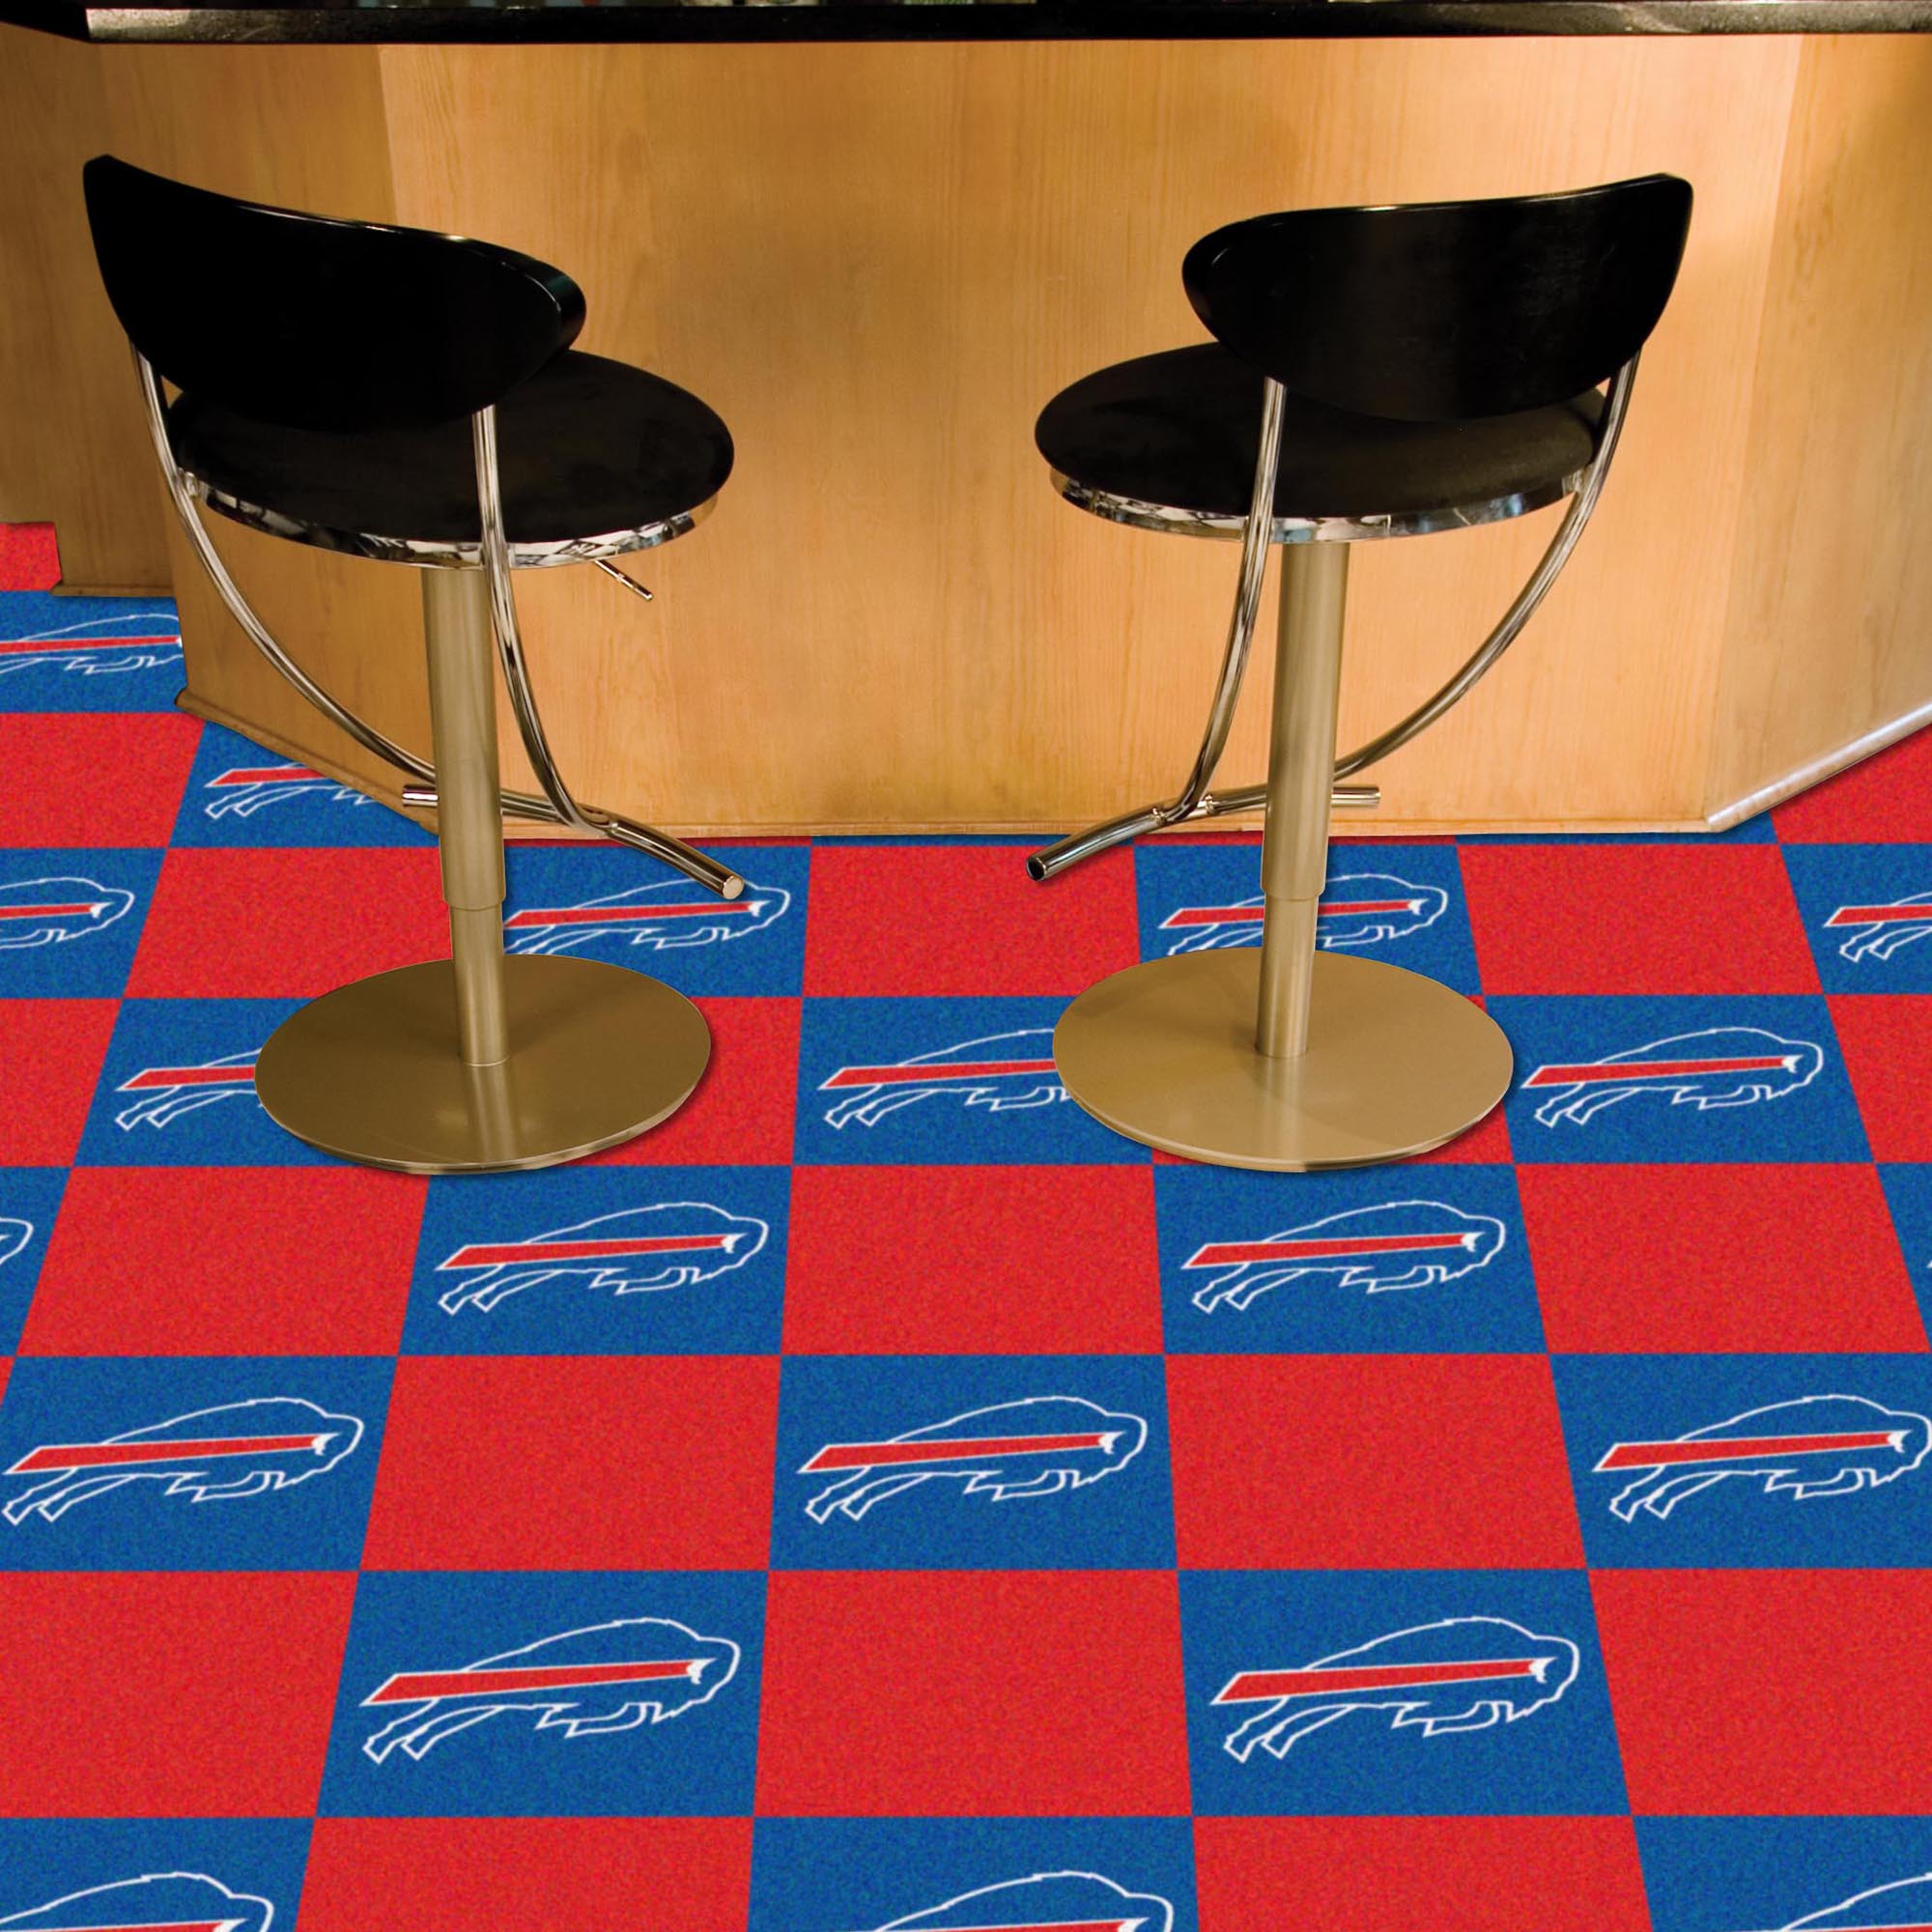 Bills Team Carpet Tiles - 45 sq ft